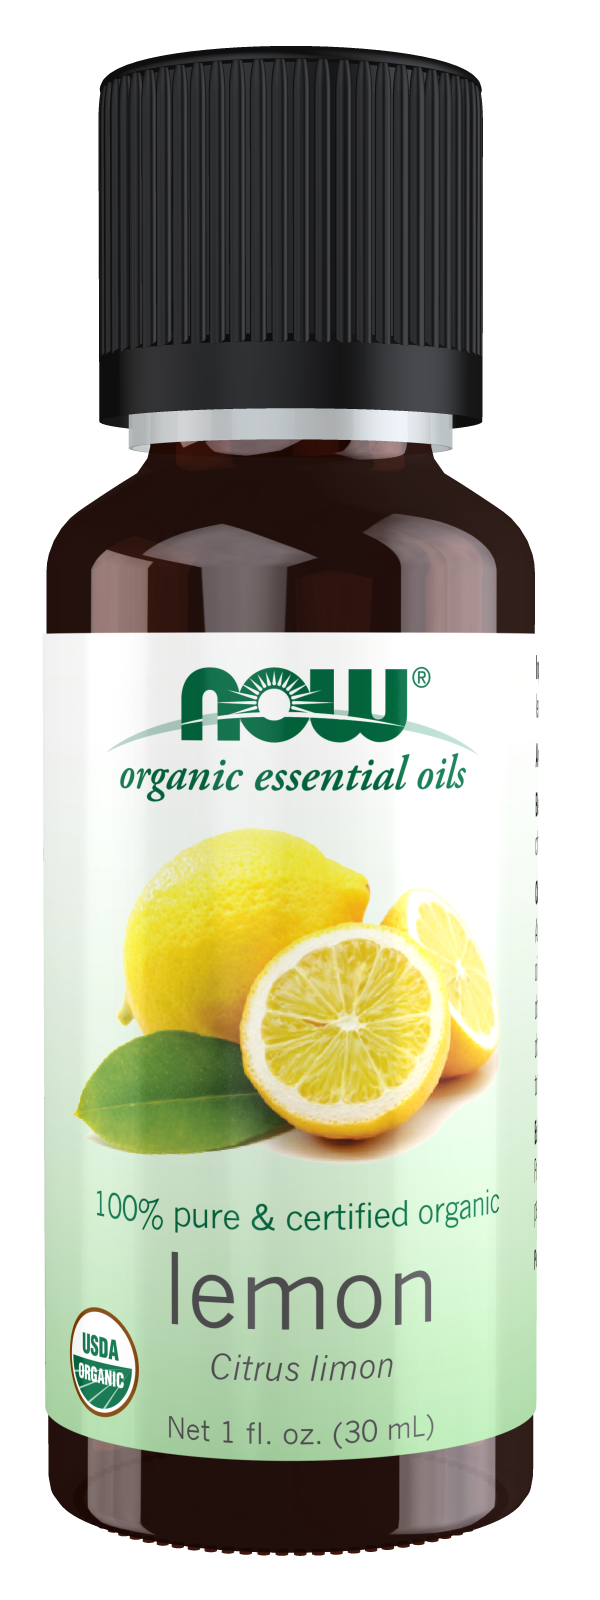 Organic Essential Oil, Bergamot Essential Oil 10ml